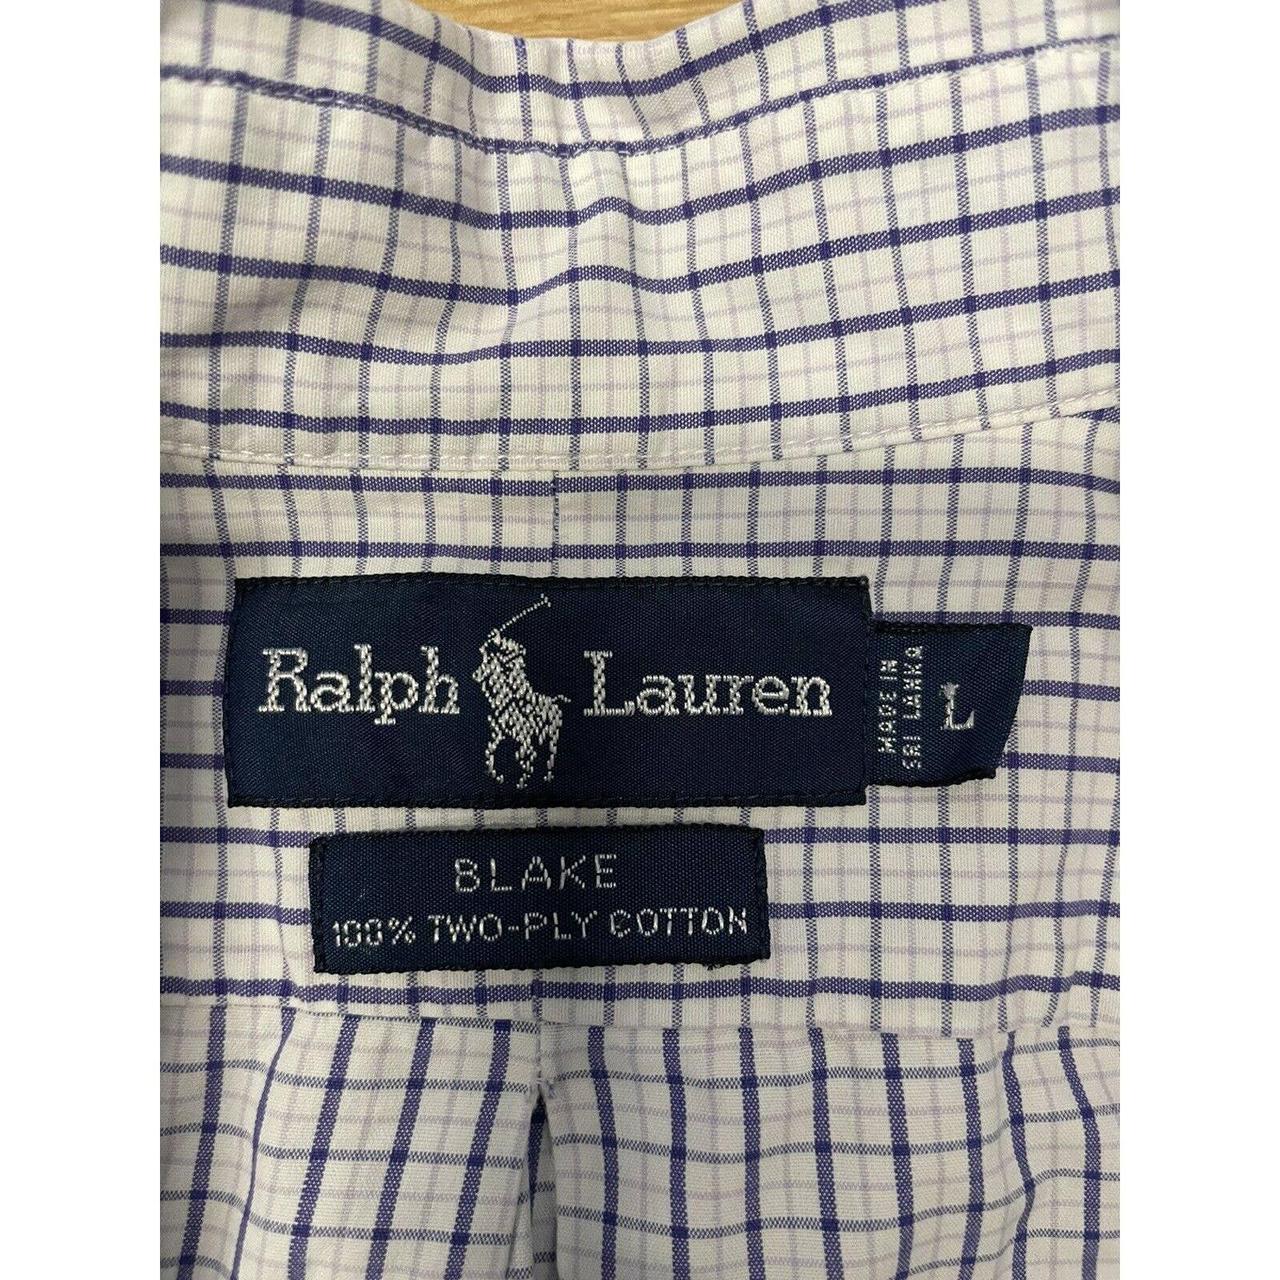 POLO Ralph Lauren BLAKE 100% Two-Ply Cotton Men’s... - Depop